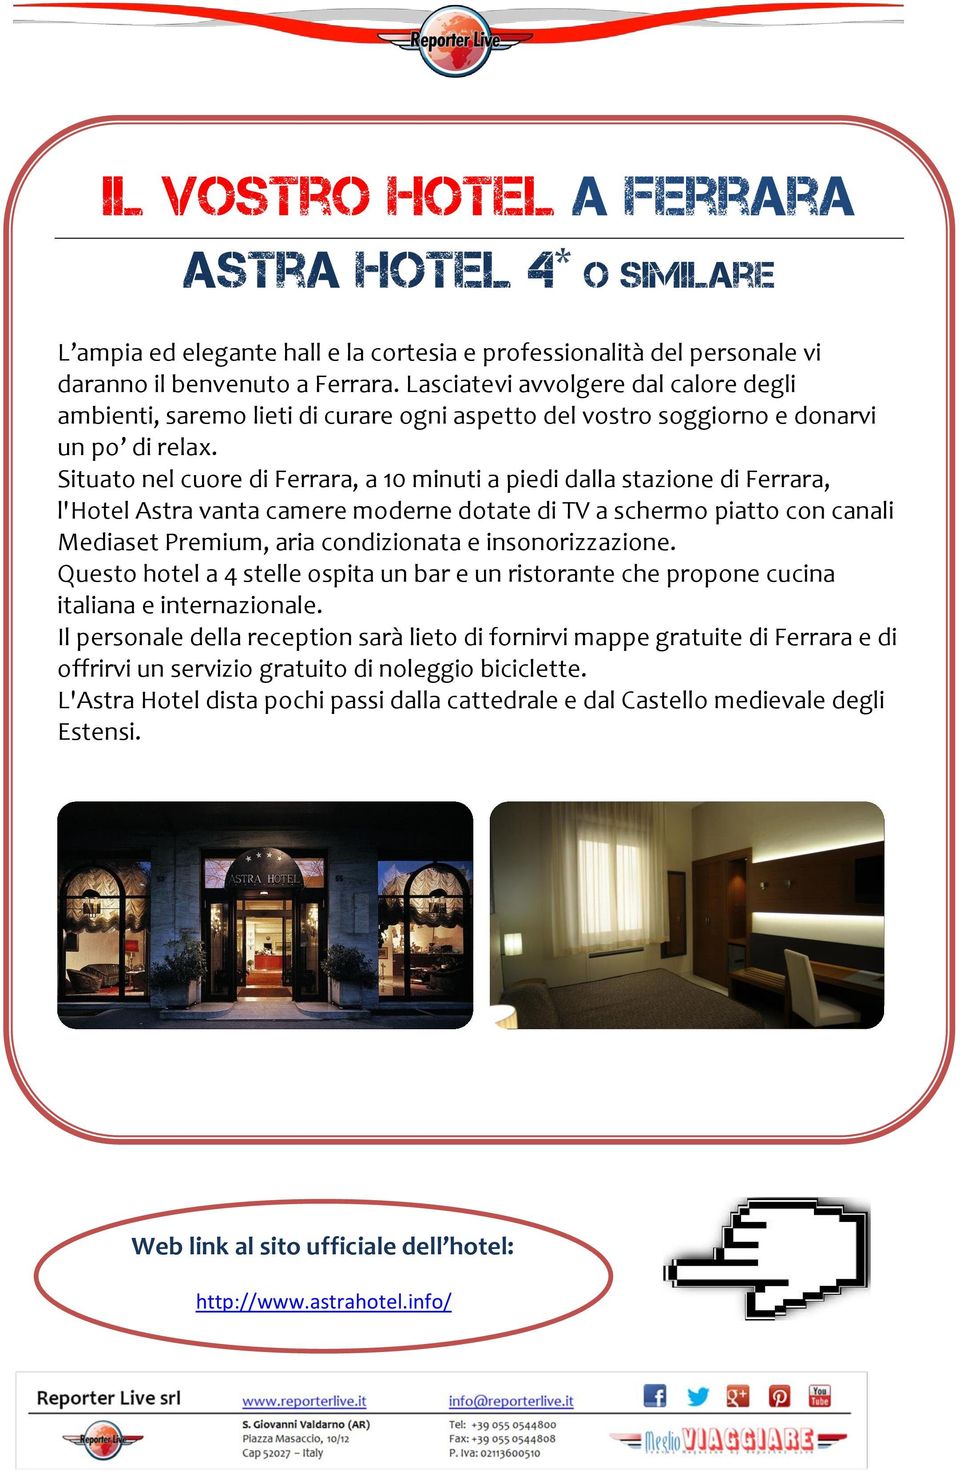 Situato nel cuore di Ferrara, a 10 minuti a piedi dalla stazione di Ferrara, l'hotel Astra vanta camere moderne dotate di TV a schermo piatto con canali Mediaset Premium, aria condizionata e